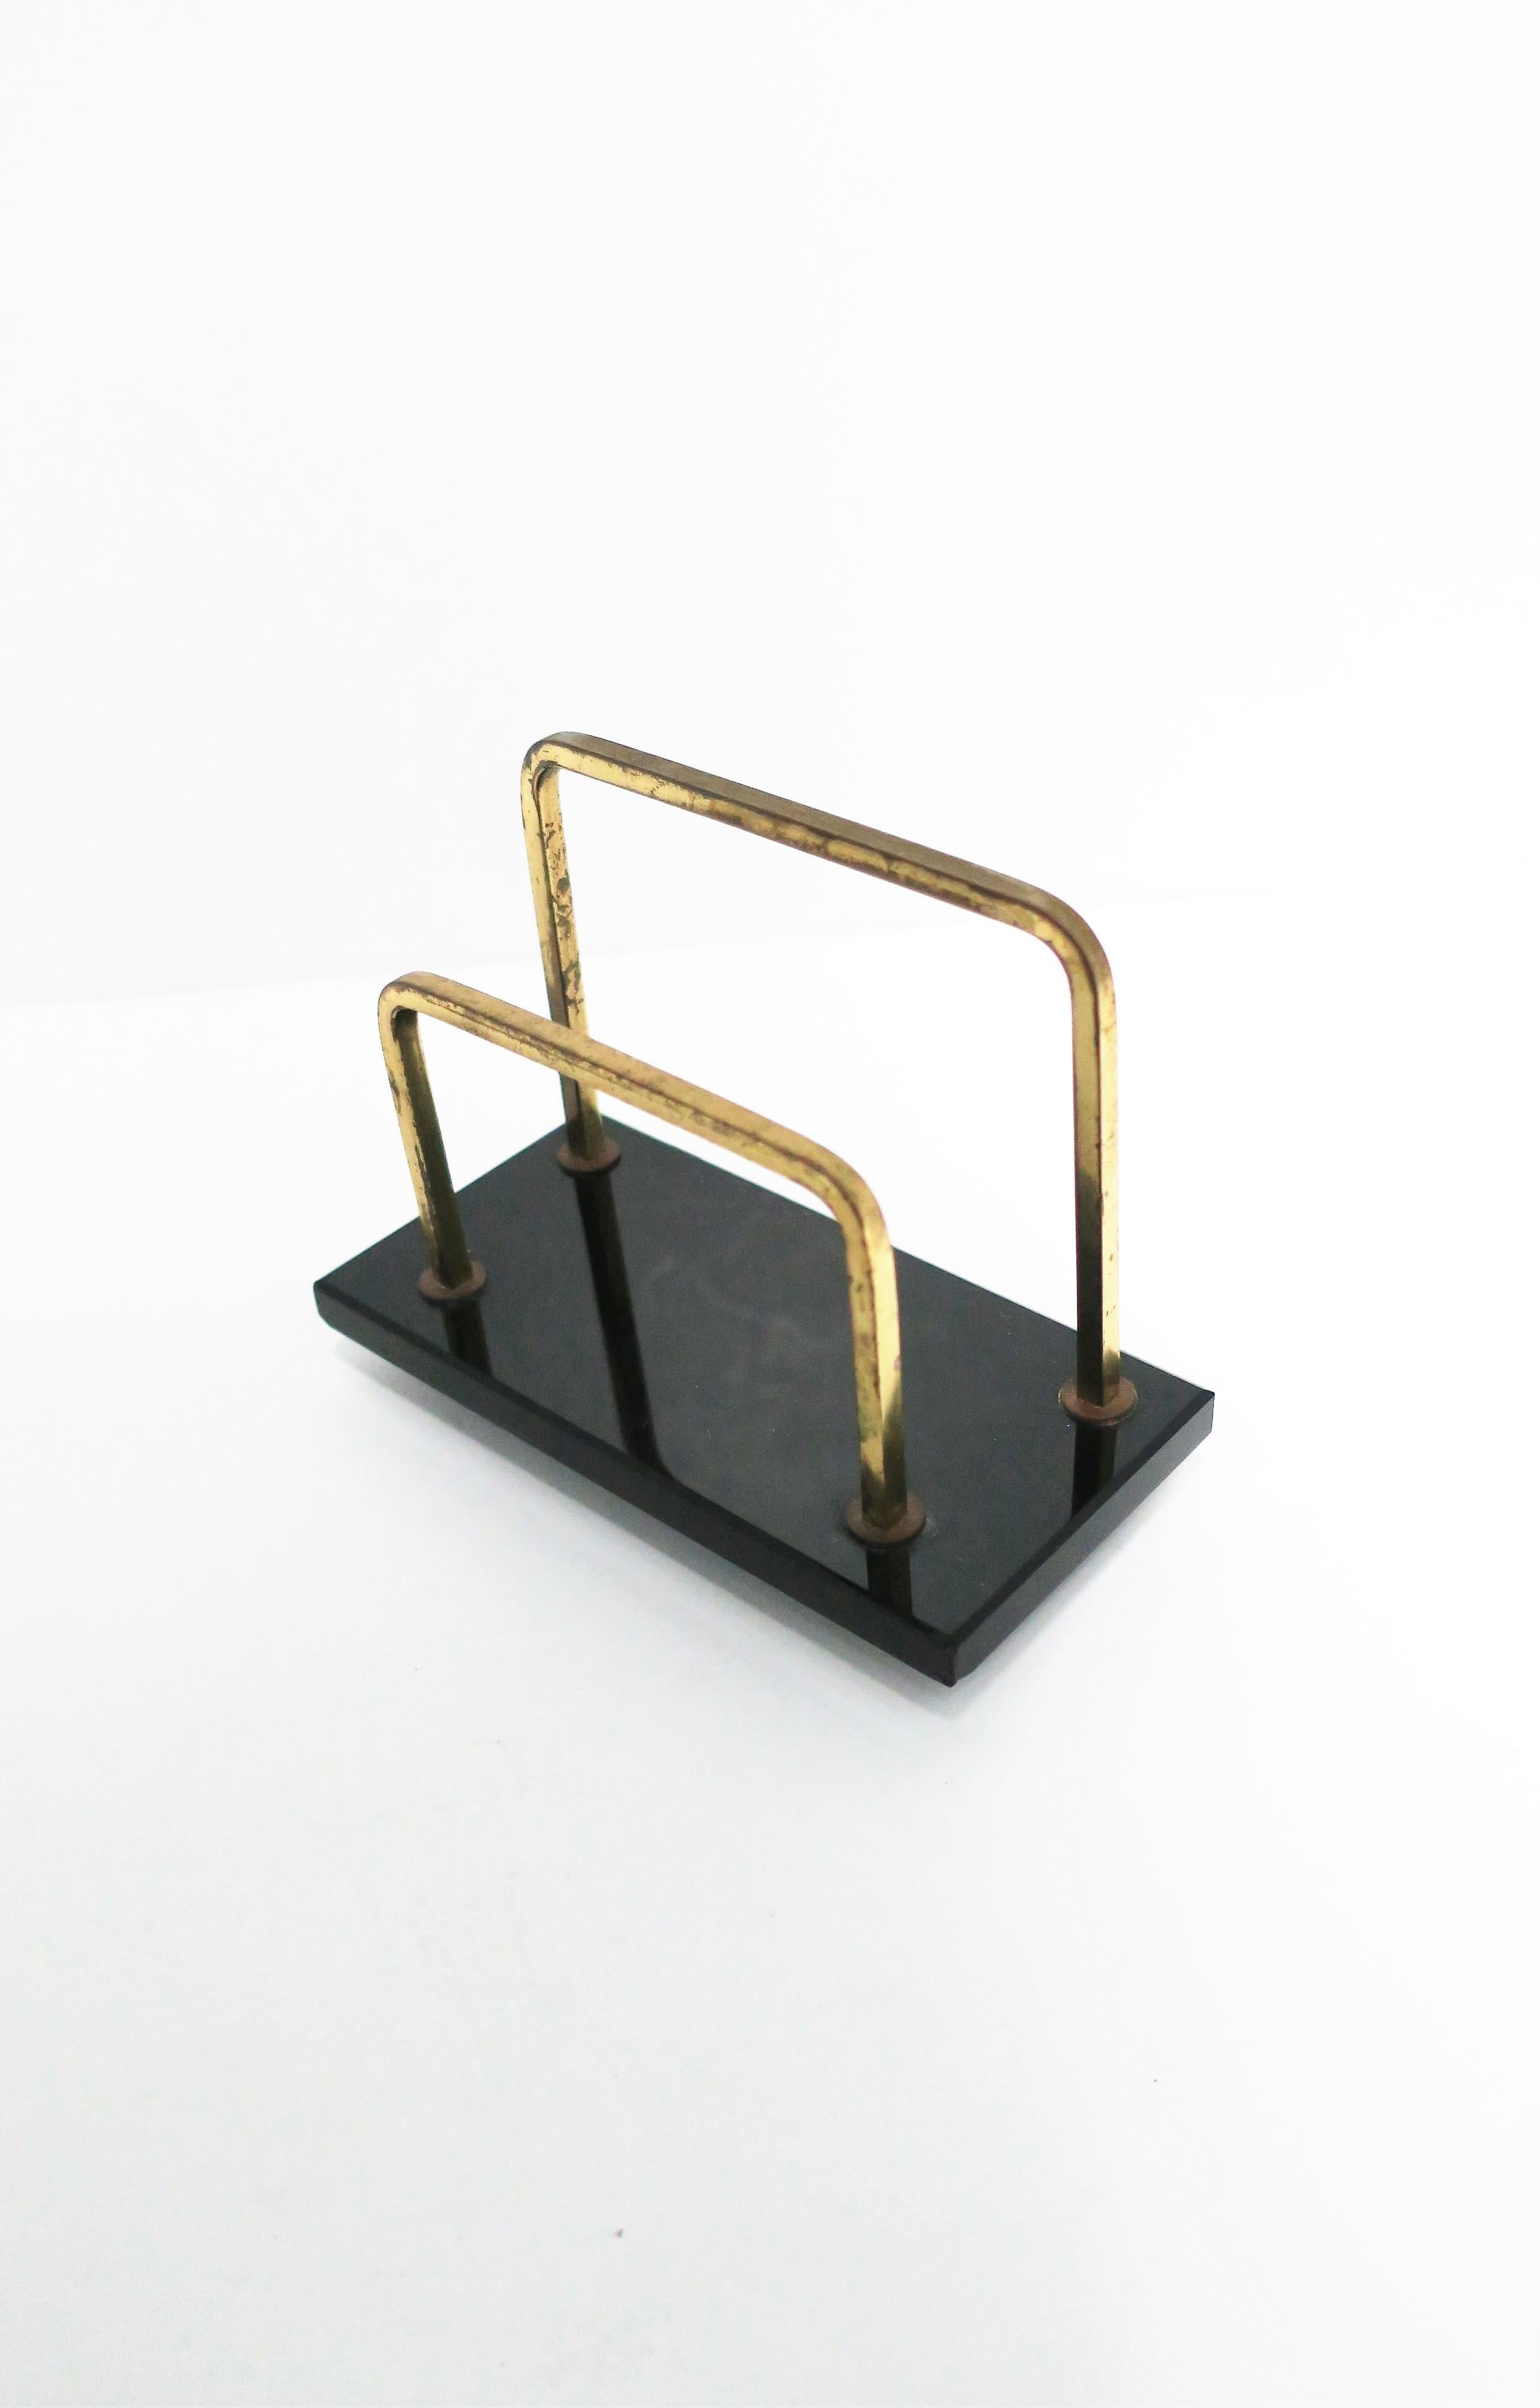 Vintage 1970's Letter Holder Hipster Desk Decor Jungenstil Art Deco Gold Brass Retro Office Supplies Coral Gimp Wire Coil